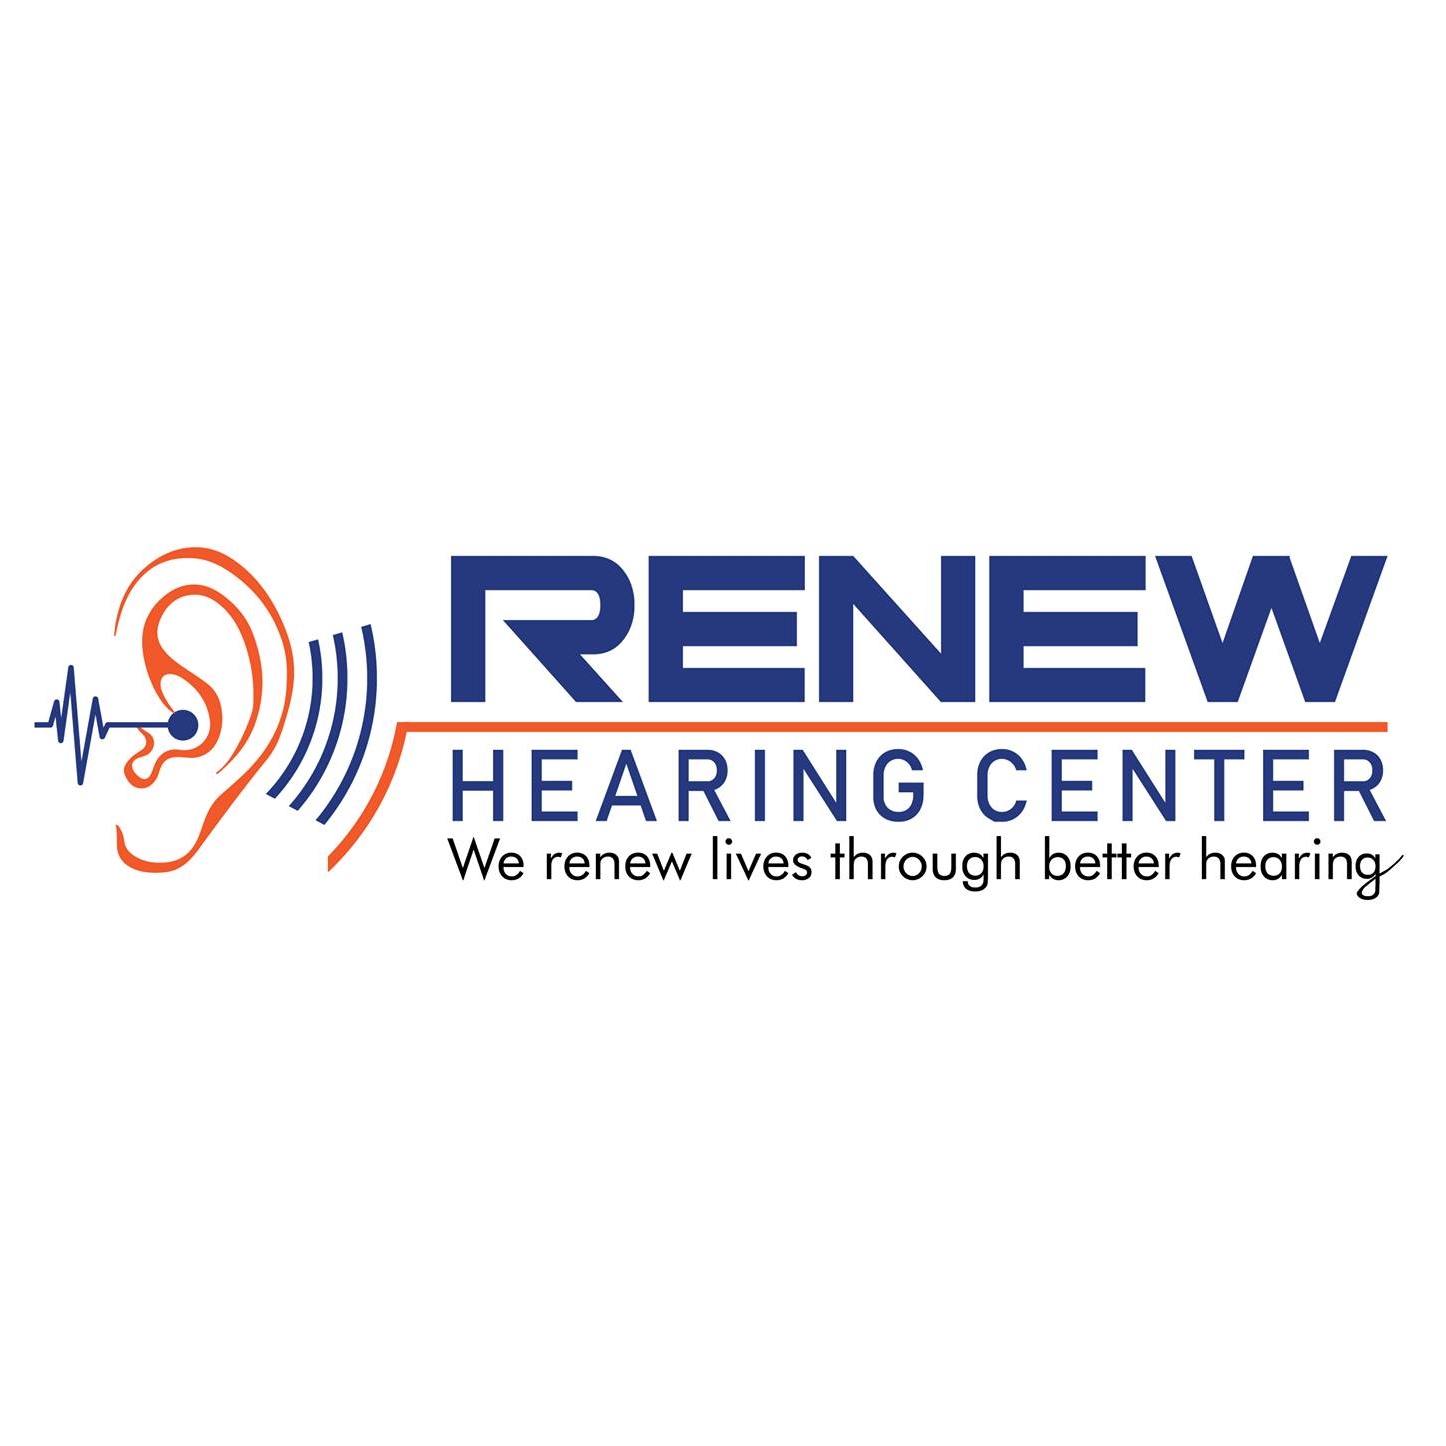 Hearing Centre in Panjagutta.,hyderabad,Hospitals,Public Hospitals